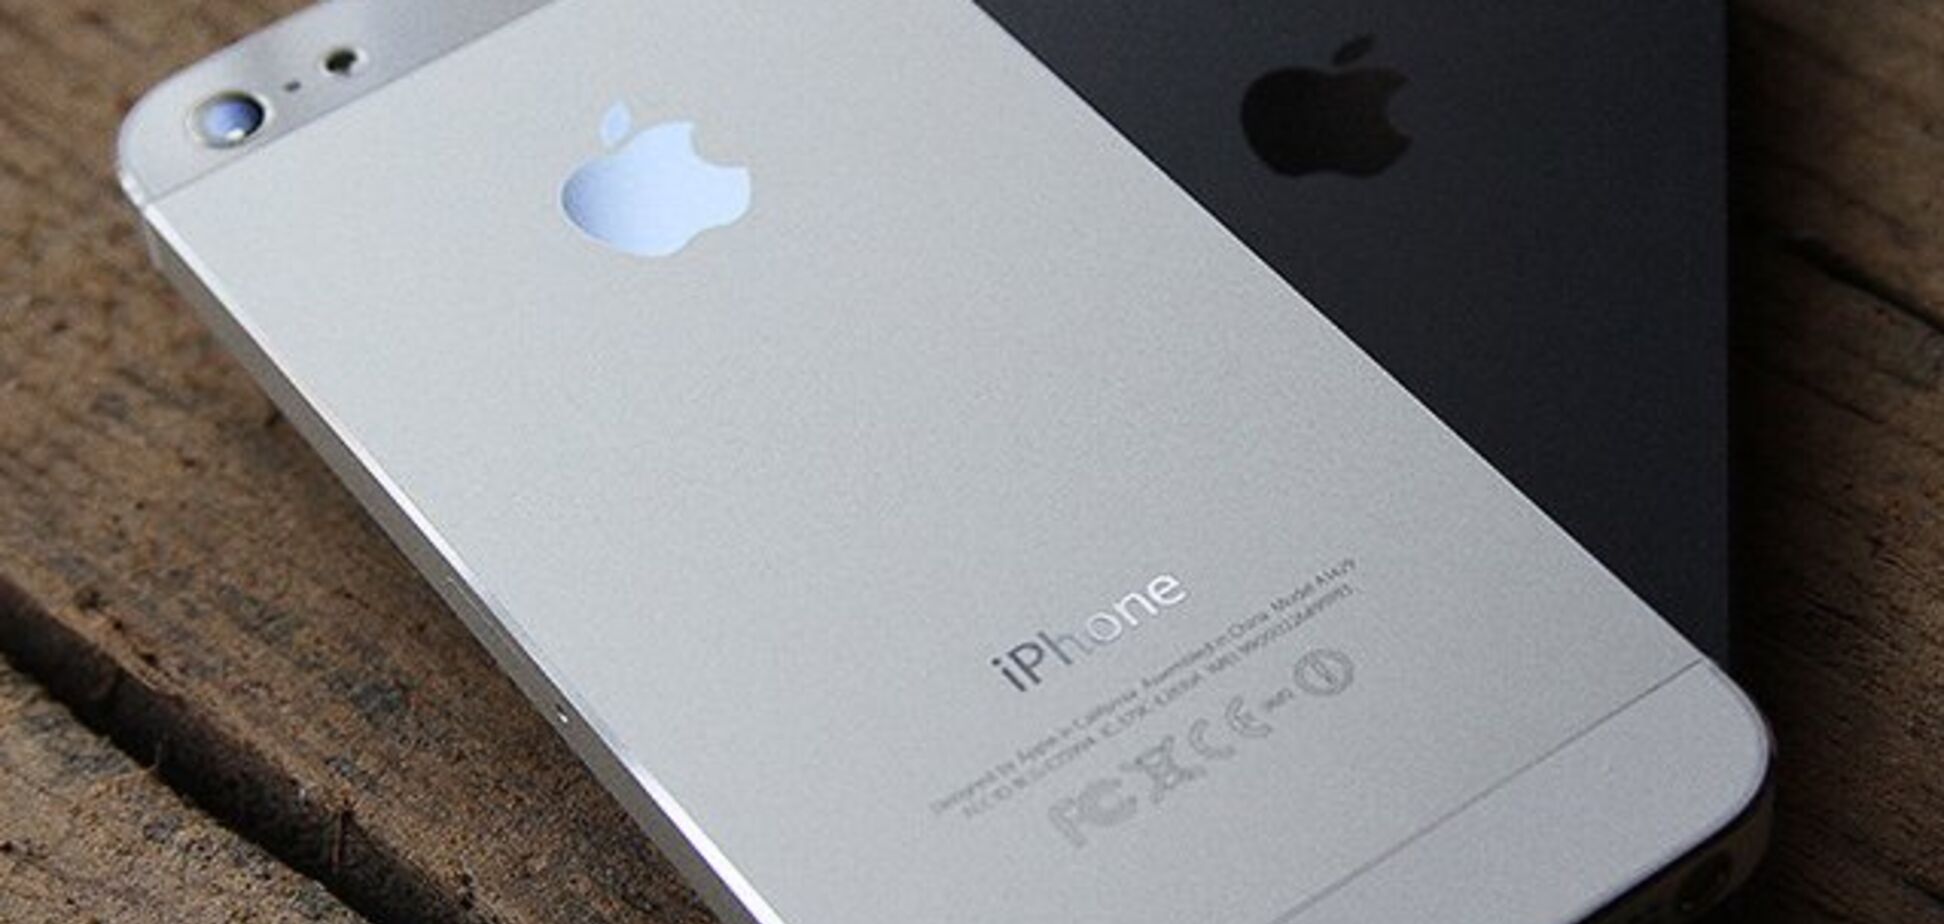 Apple начала массово отключать iPhone и iPad от интернета